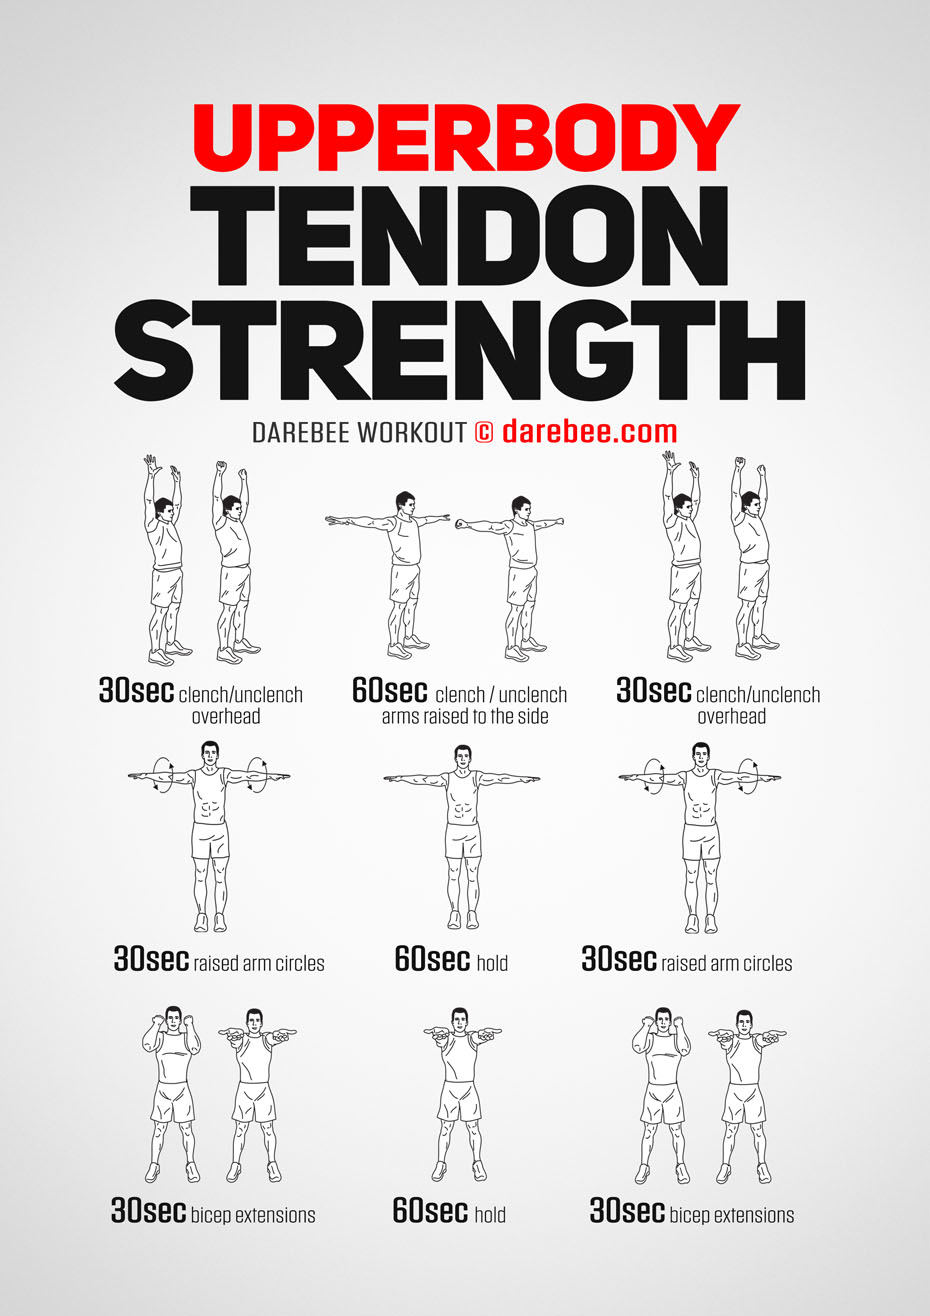 TENDON VS. MUSCLE: STRENGTHENING TENDONS FOR OPTIMAL FITNESS